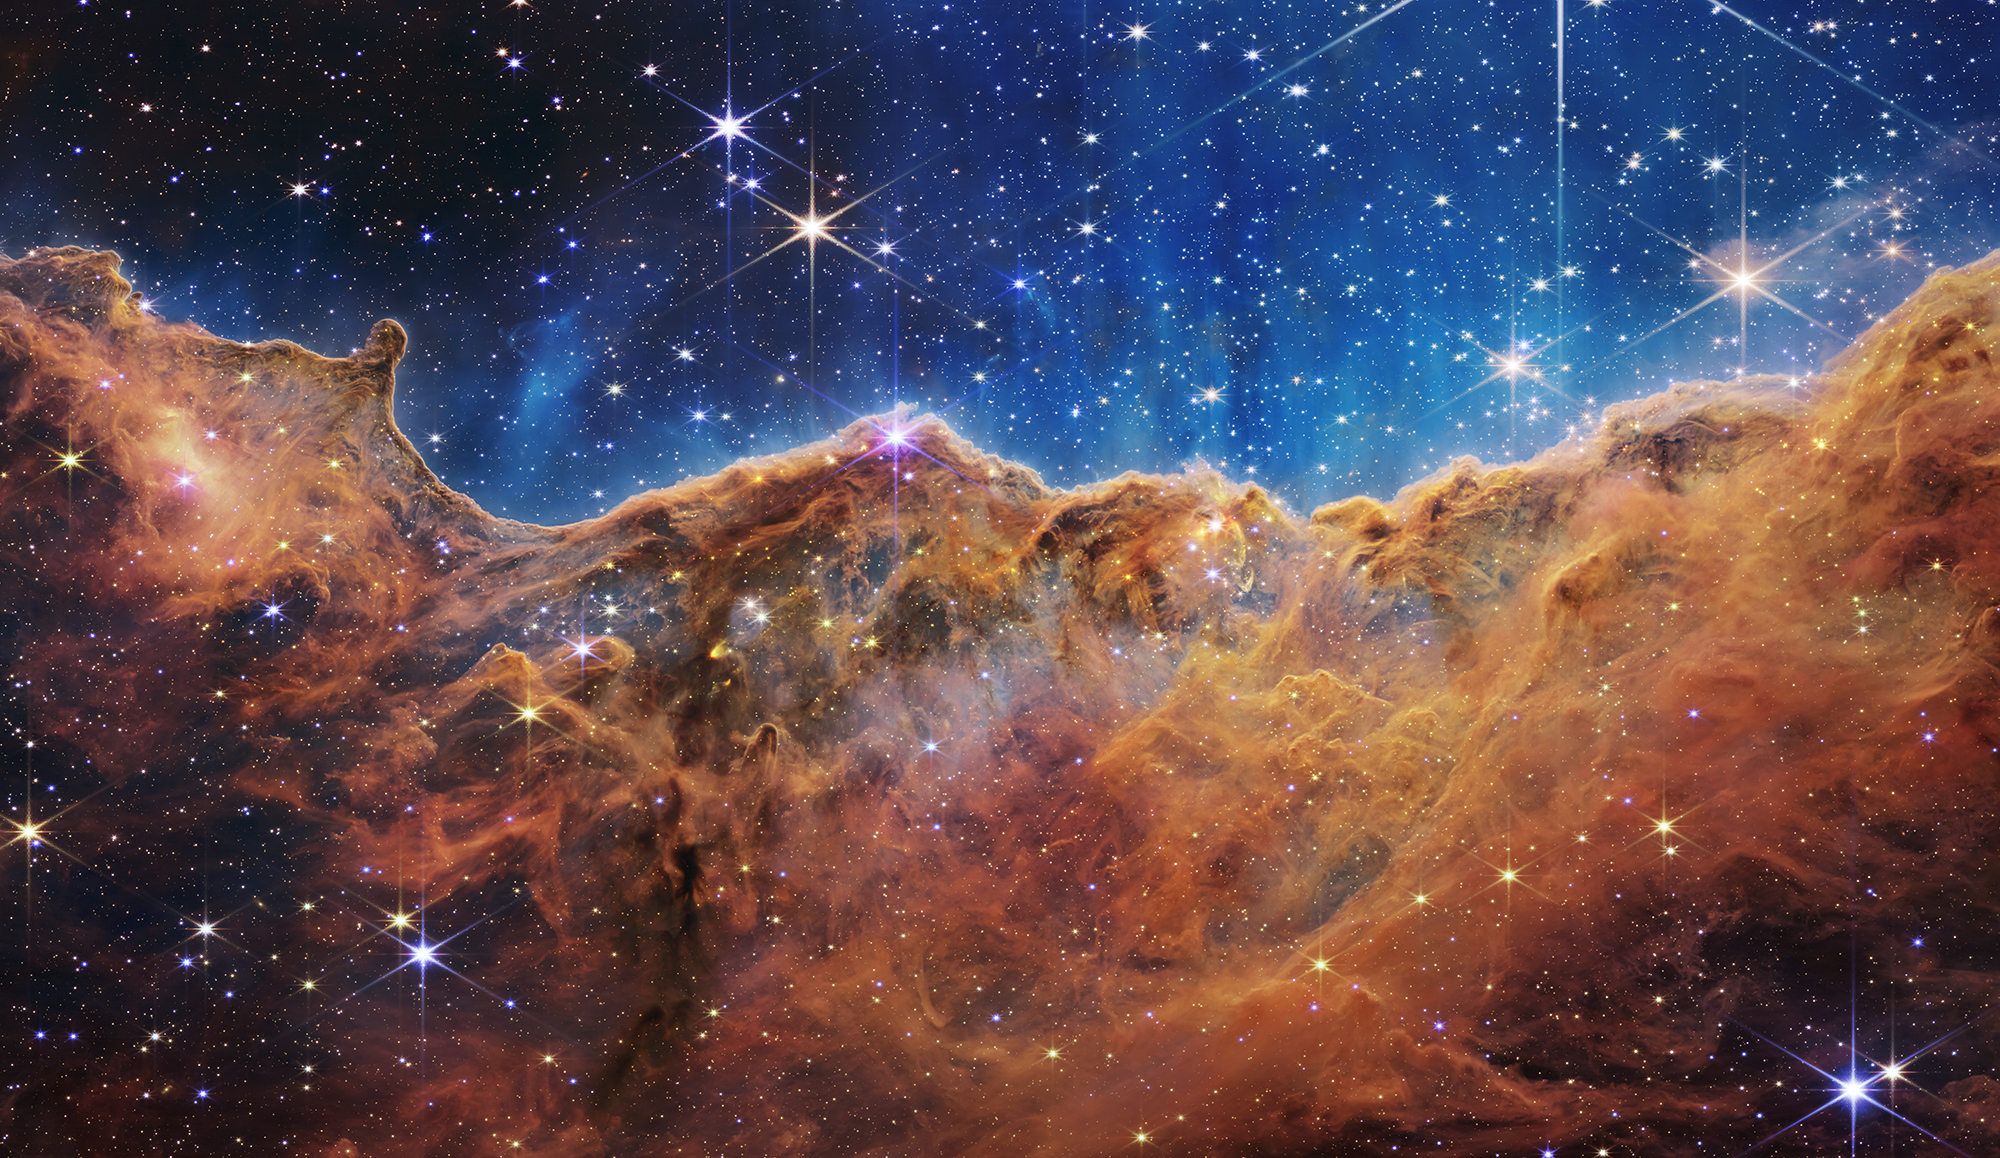 Khám phá về James Webb và khoa học vũ trụ với những hình ảnh tuyệt đẹp. Khi bạn chiêm ngưỡng những hình ảnh này, bạn sẽ biết thêm về công nghệ tiên tiến nhất để nhìn thấy vũ trụ cũng như những khám phá mới nhất về các thiên thể vũ trụ.